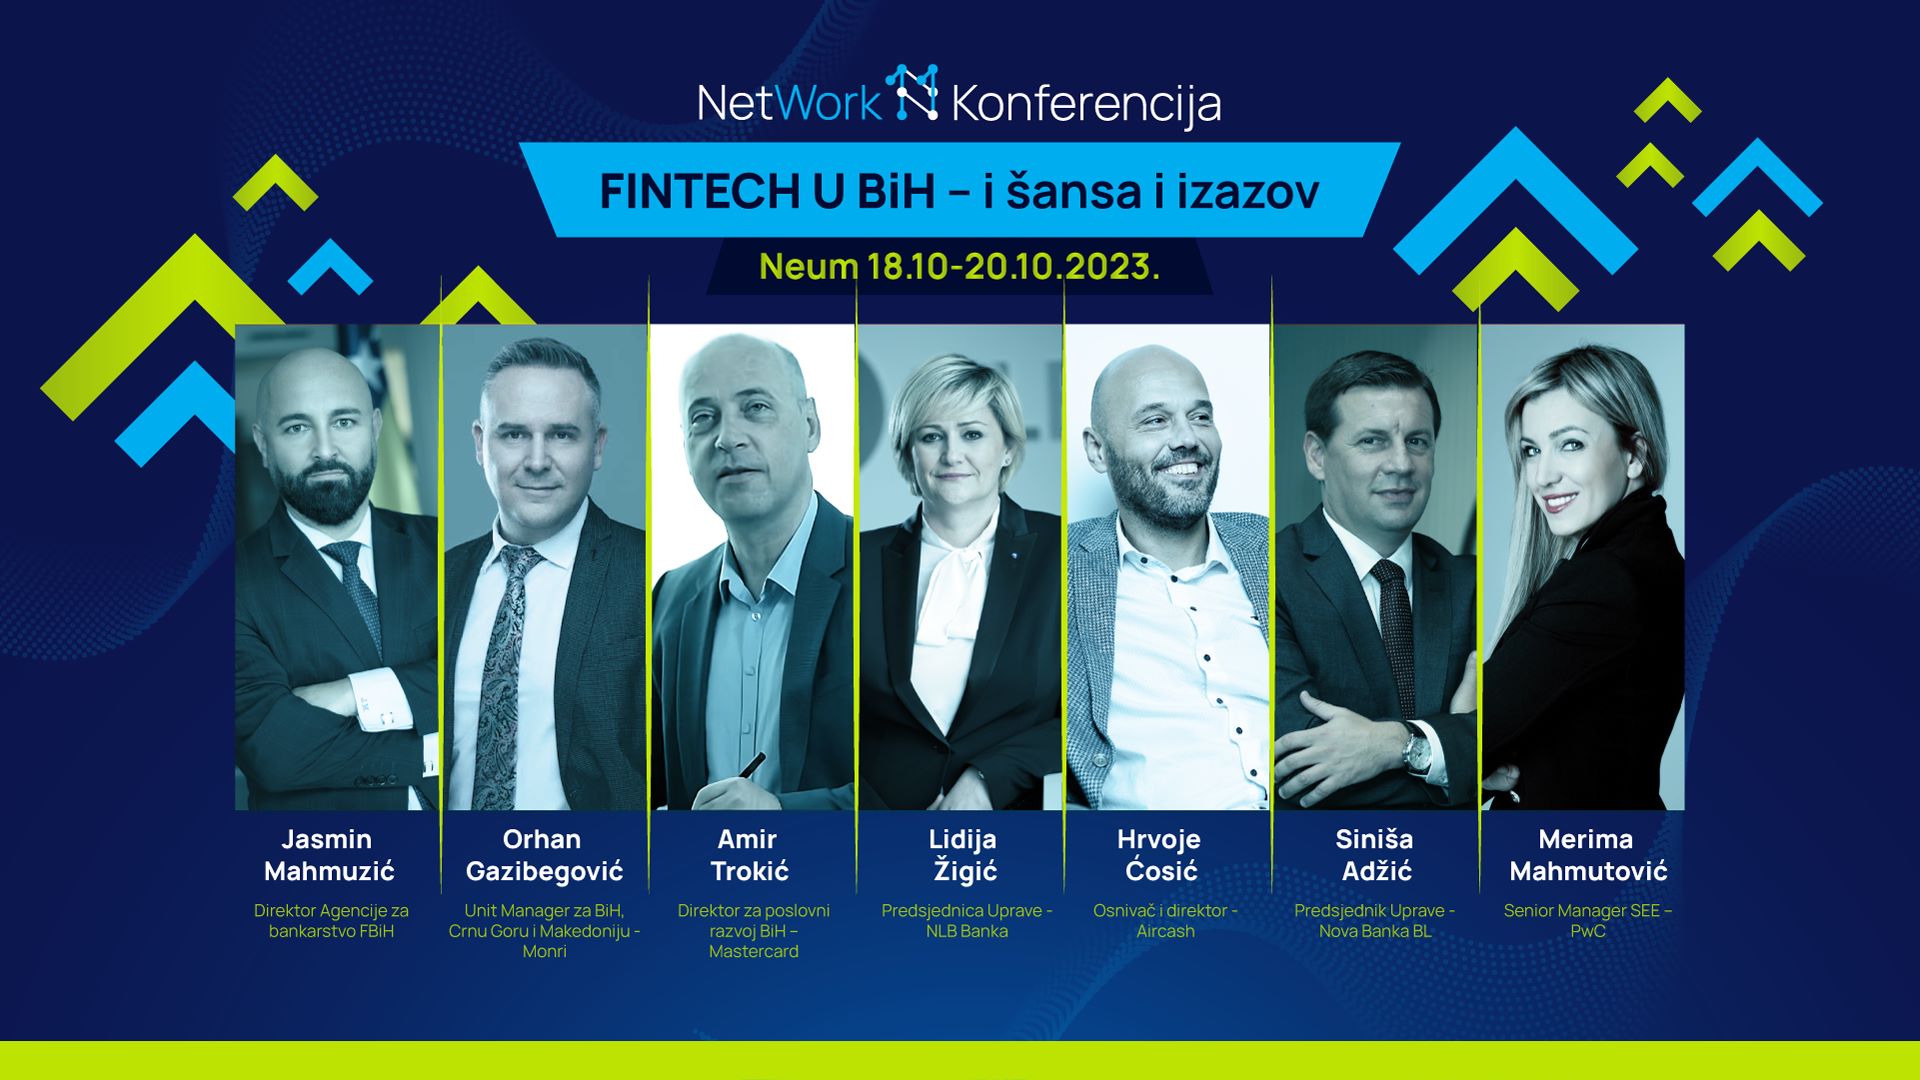 Fintech u BiH: Šansa i izazov na NetWork 11 konferenciji